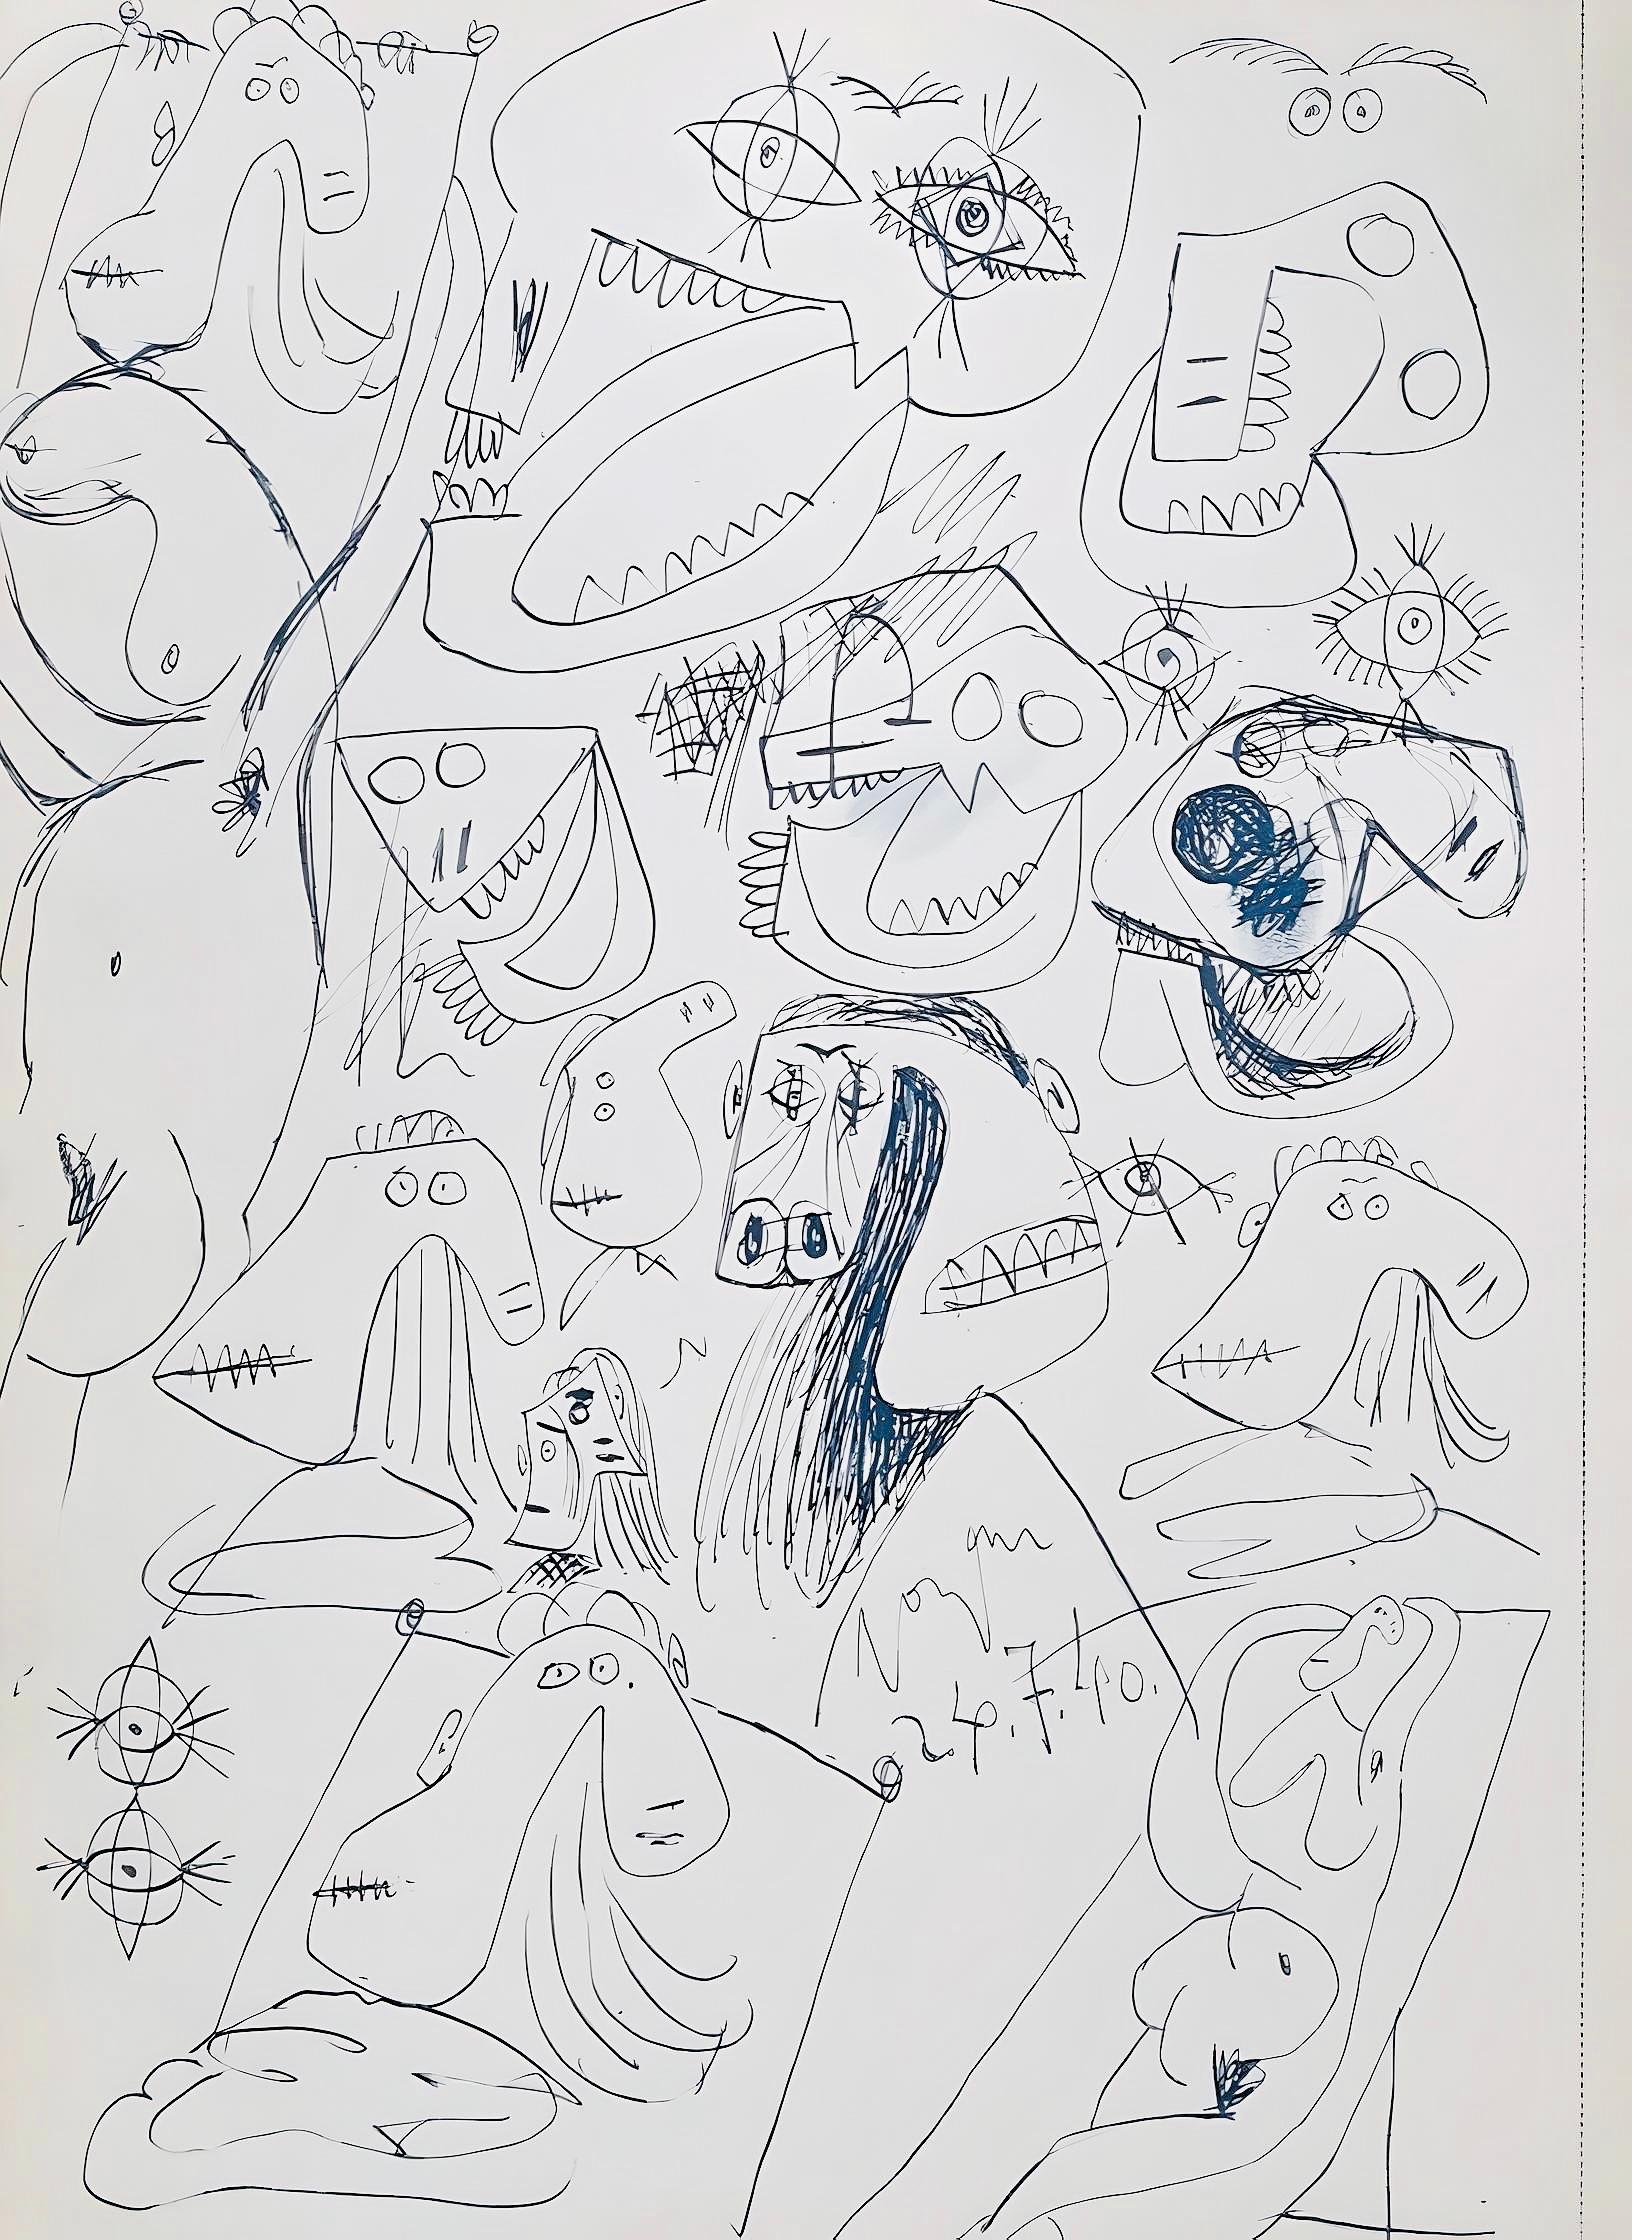 Picasso, Composition, Carnet de dessins de Picasso, Cahiers d’Art (after) For Sale 3